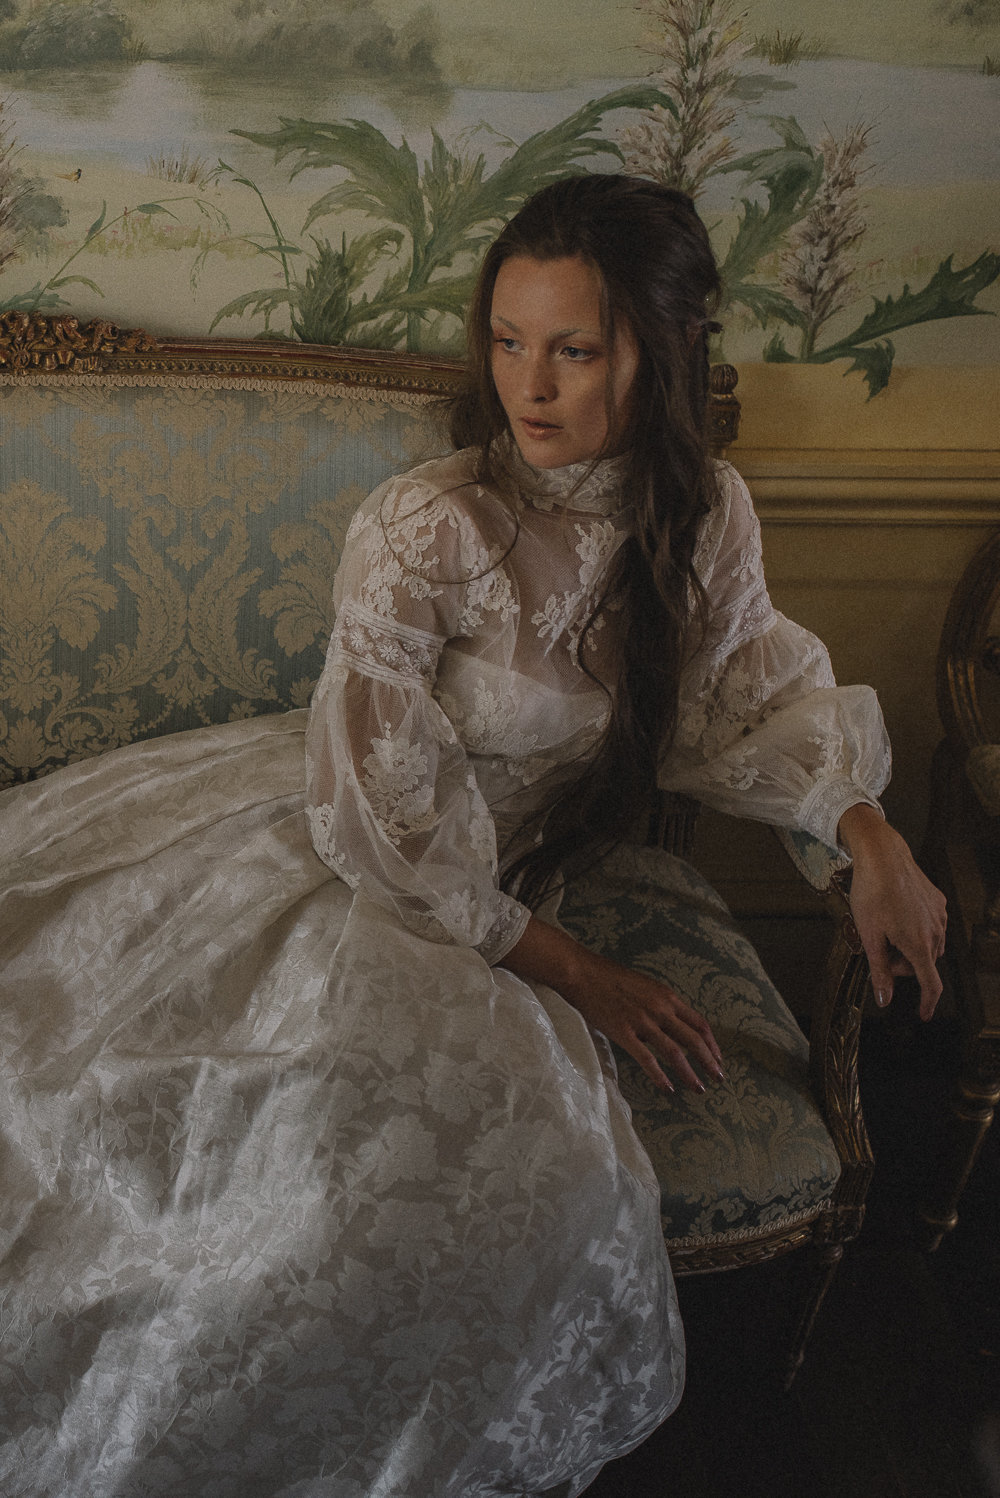 Edith-lace-organza-high-neck-long-sleeve-wedding-dress-JoanneFlemingDesign-DavidWickhamPhoto (26)